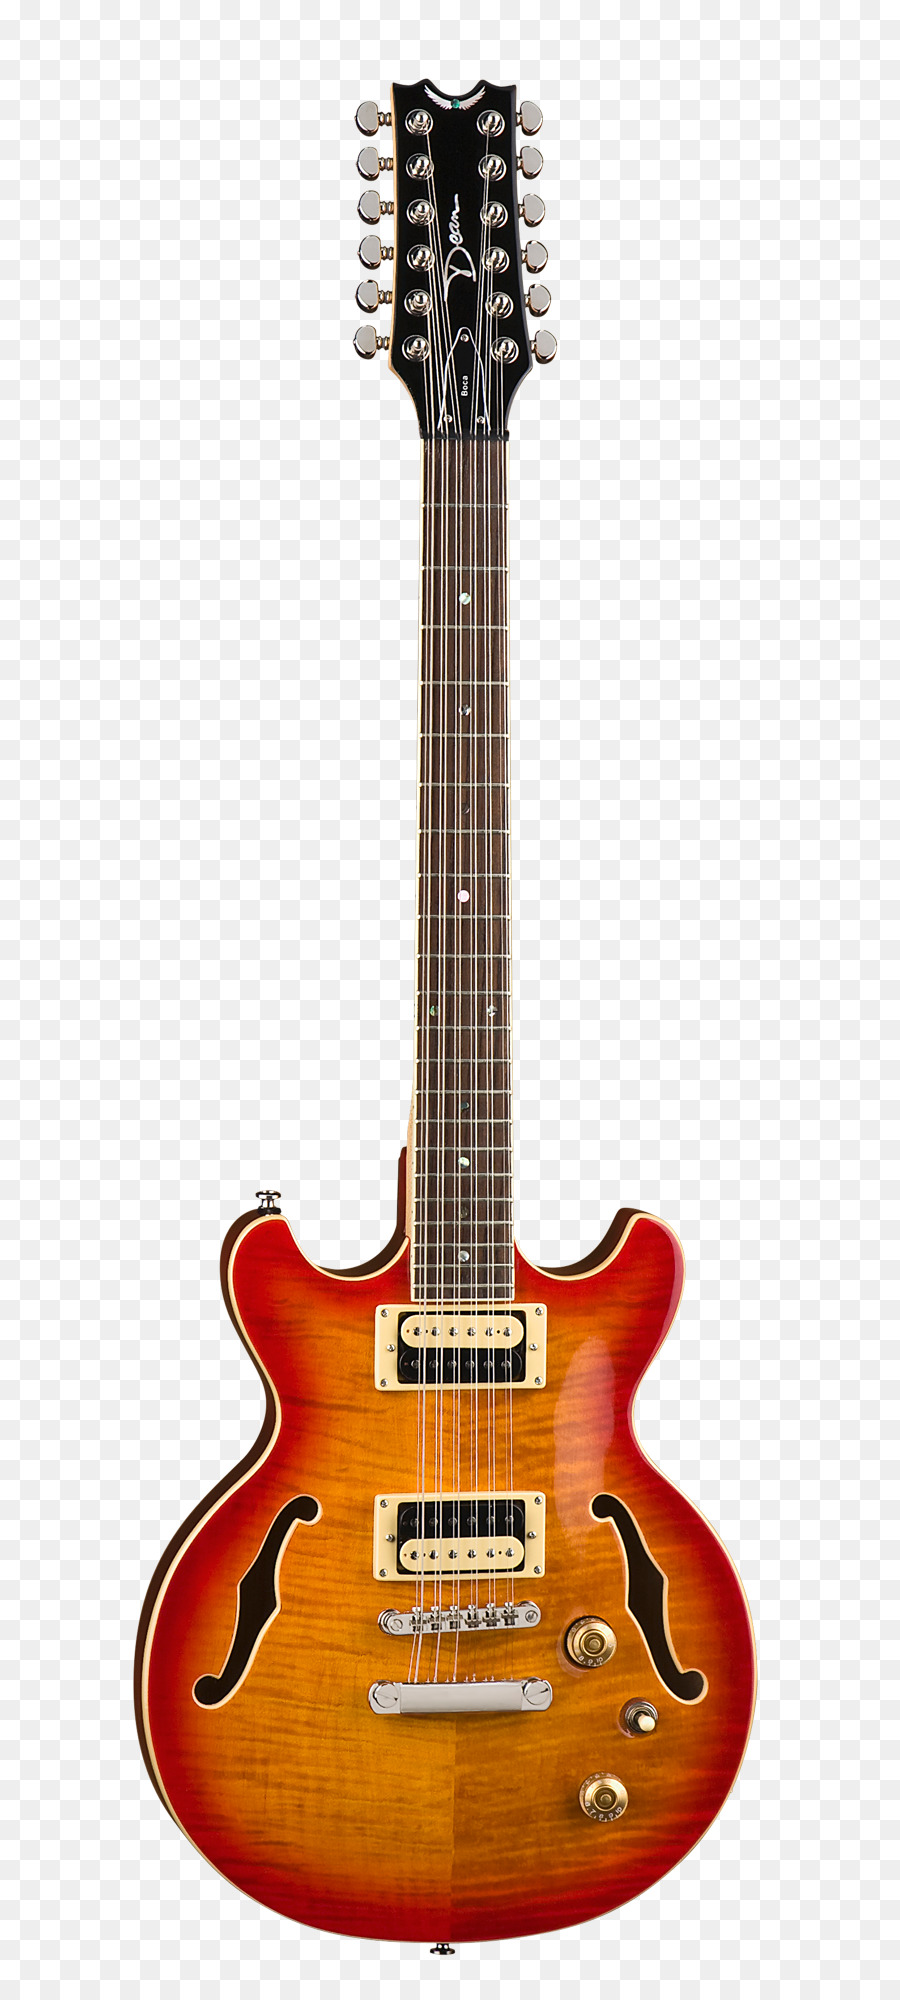 Chitarra a dodici corde Dean Chitarre Solid body della chitarra Elettrica, chitarra Archtop - chitarra elettrica